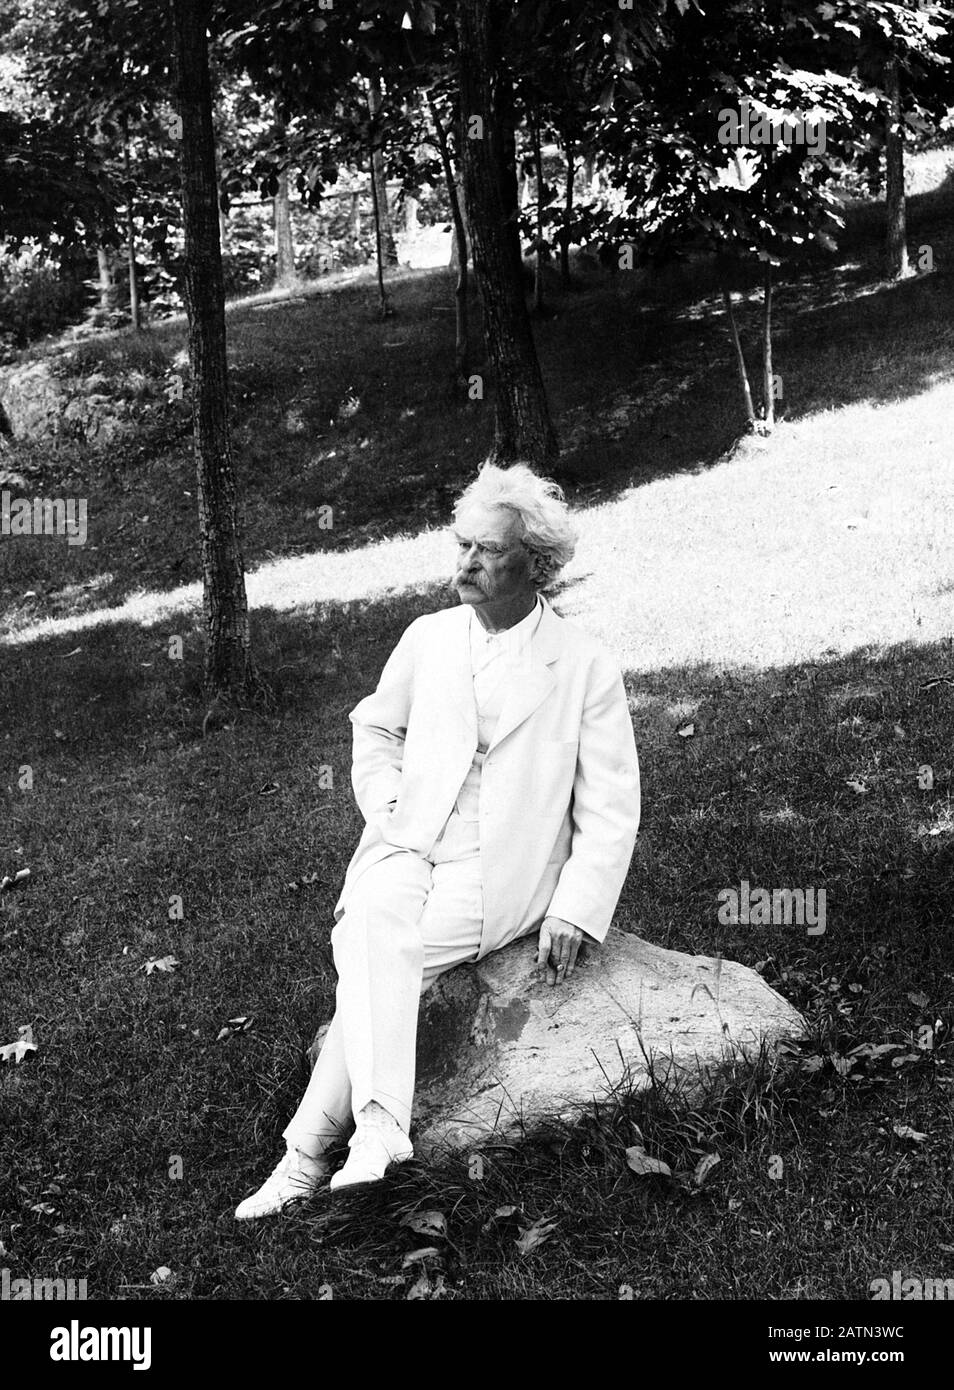 Photo de portrait vintage de l'écrivain et humoriste américain Samuel Langhorne Clemens (1835 – 1910), mieux connu par son nom de plume de Mark Twain. Photo vers 1907 par Underwood & Underwood. Banque D'Images